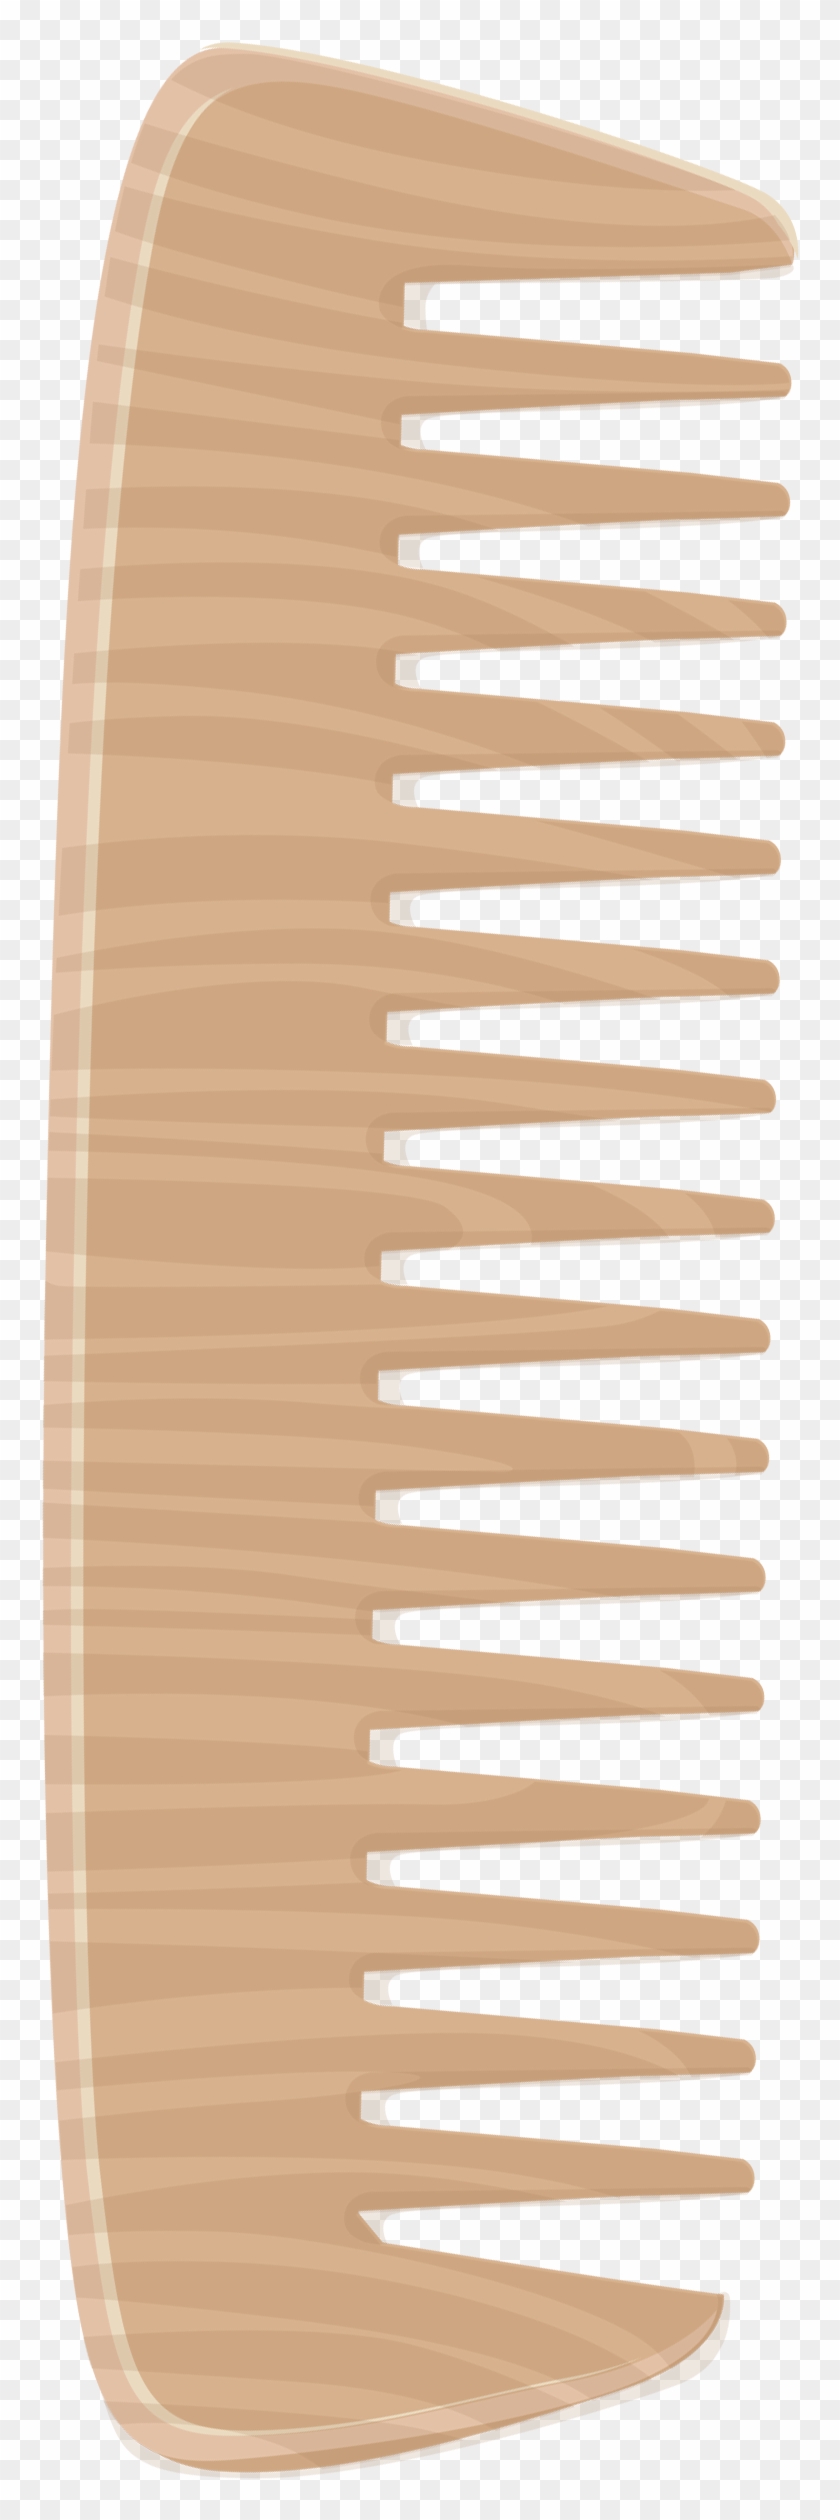 Wooden Comb Png Clipart Image - Comb #426889